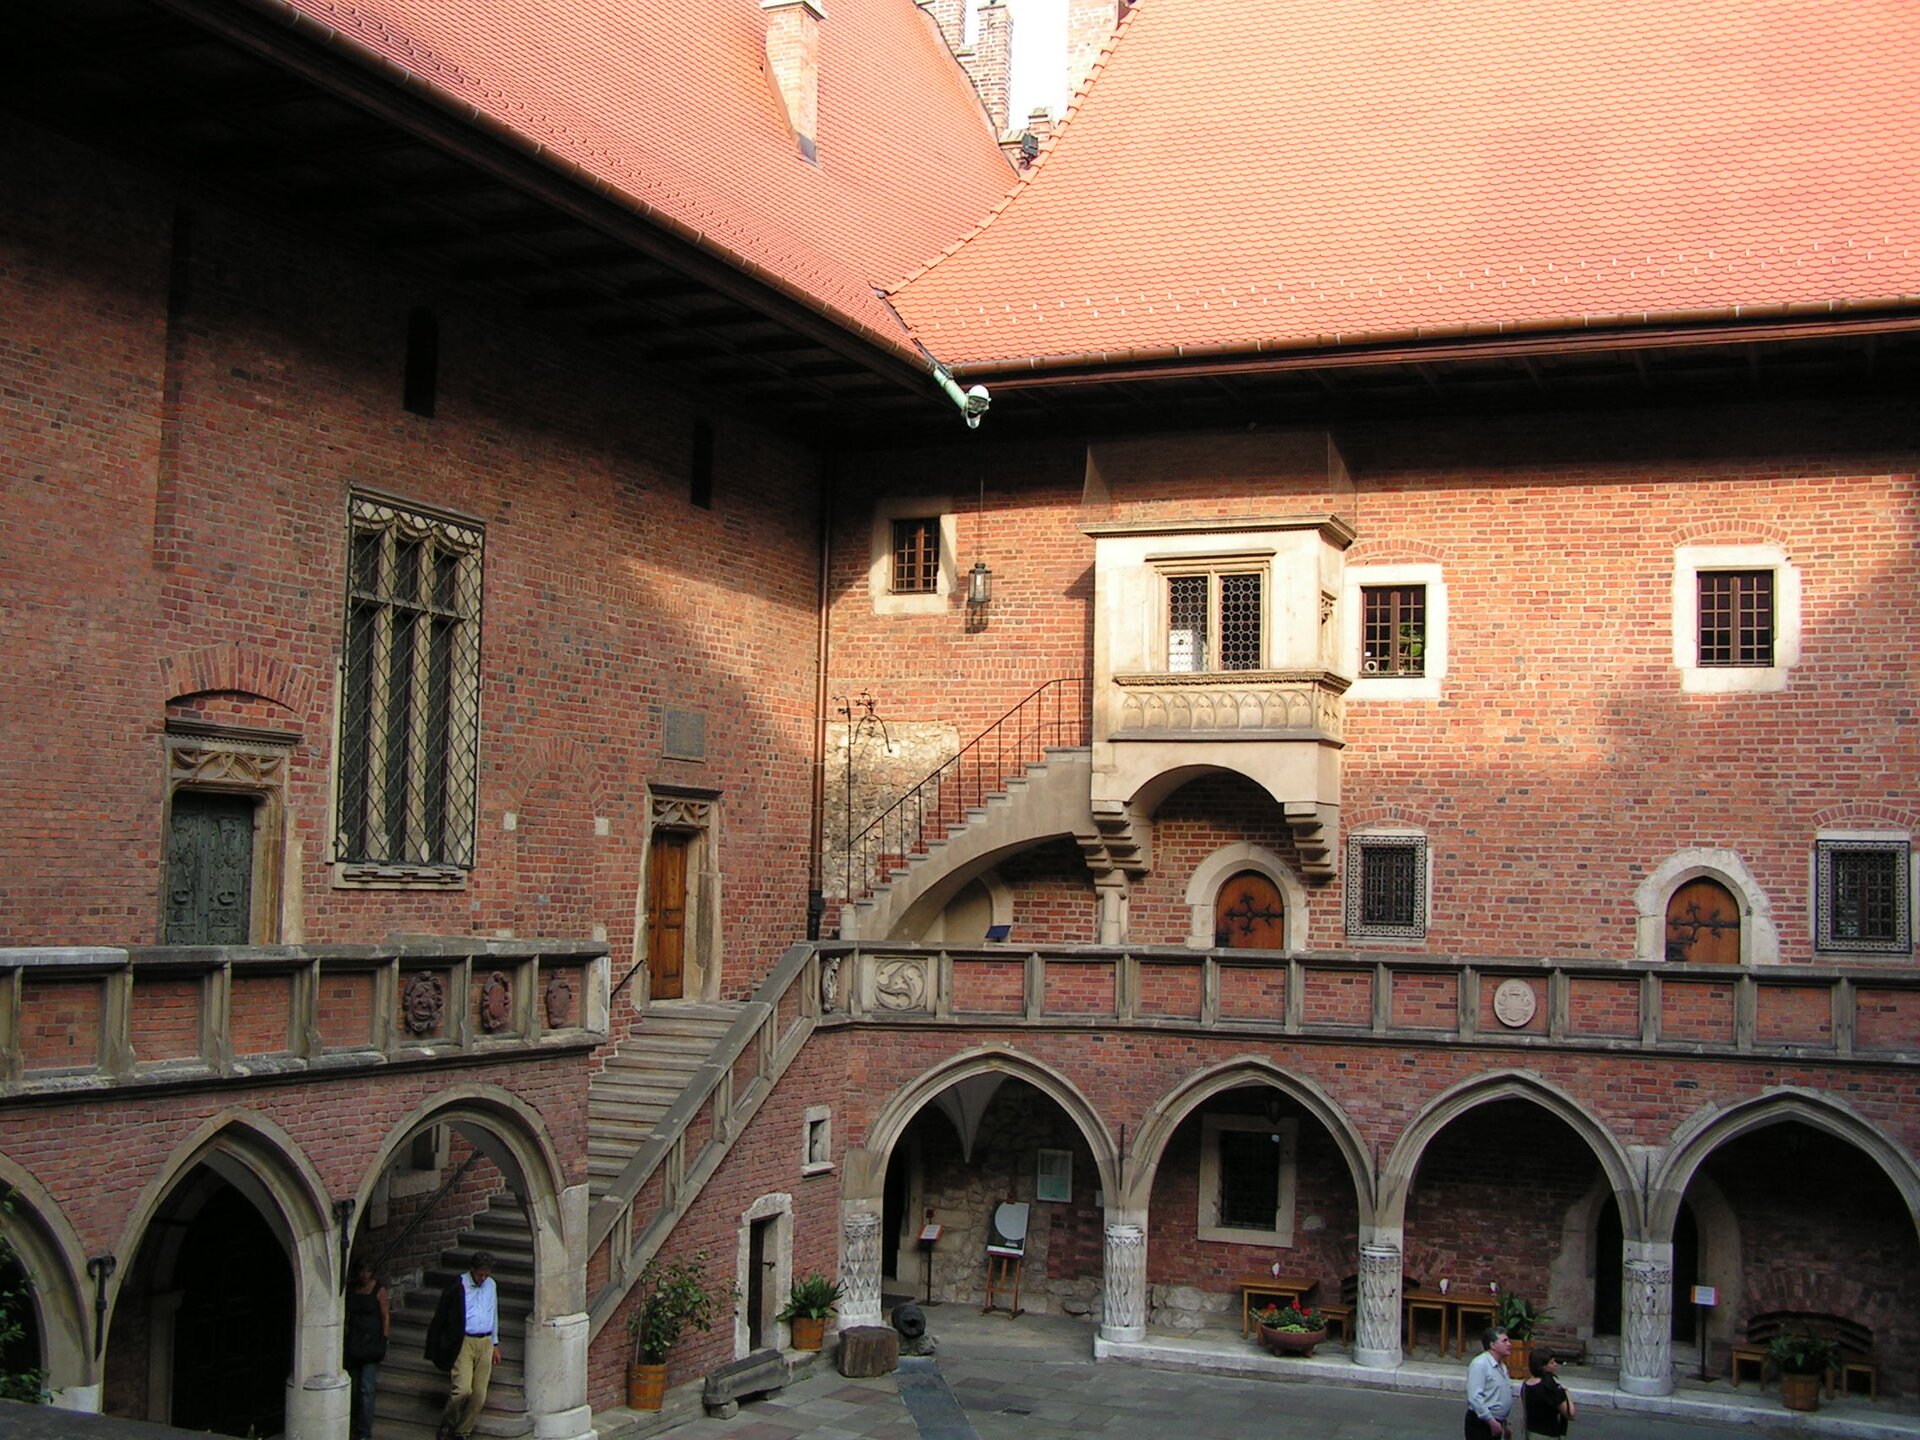 Zdjęcie przedstawia najstarszy budynek Uniwersytetu Jagiellońskiego tak zwane Collegium Maius. Fotografia została wykonana wewnątrz zabudowań, z perspektywy balkonu, z którego widok rozciąga się na dziedziniec z krużgankami. Podcienia o strzelistych łukach, wsparte są na zdobionej kolumnadzie.